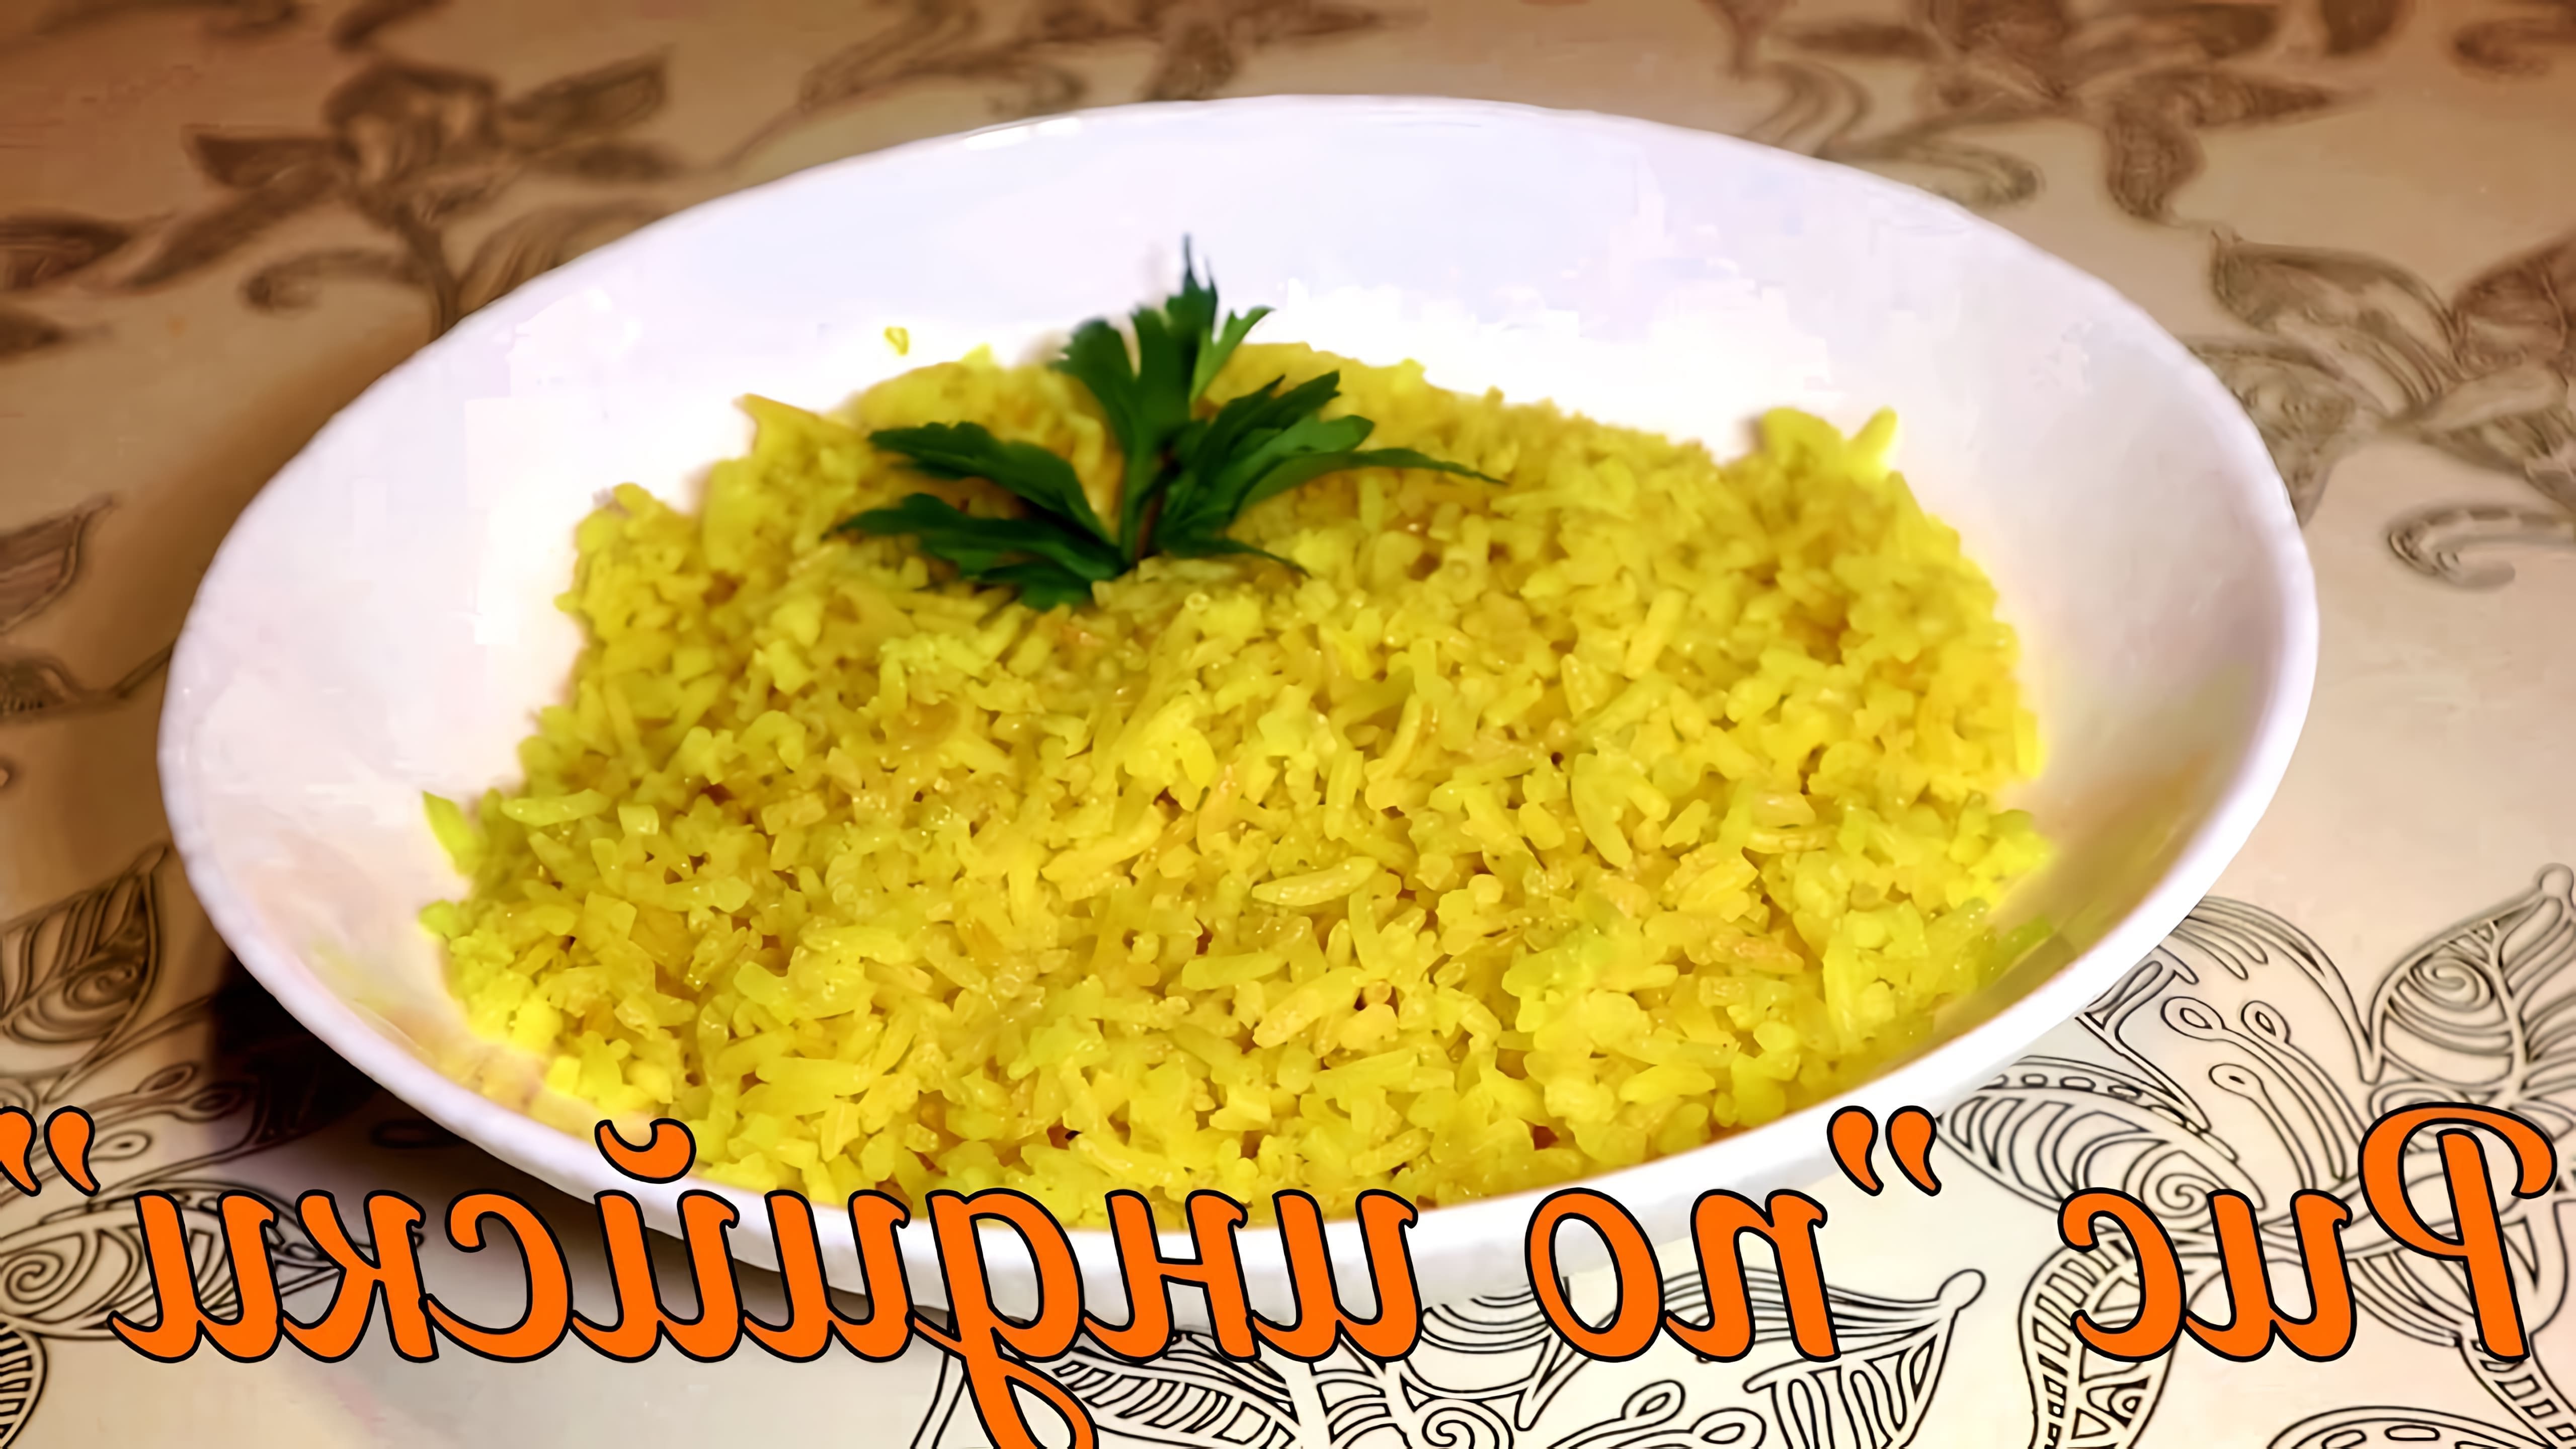 В этом видео демонстрируется рецепт приготовления идеального риса на гарнир